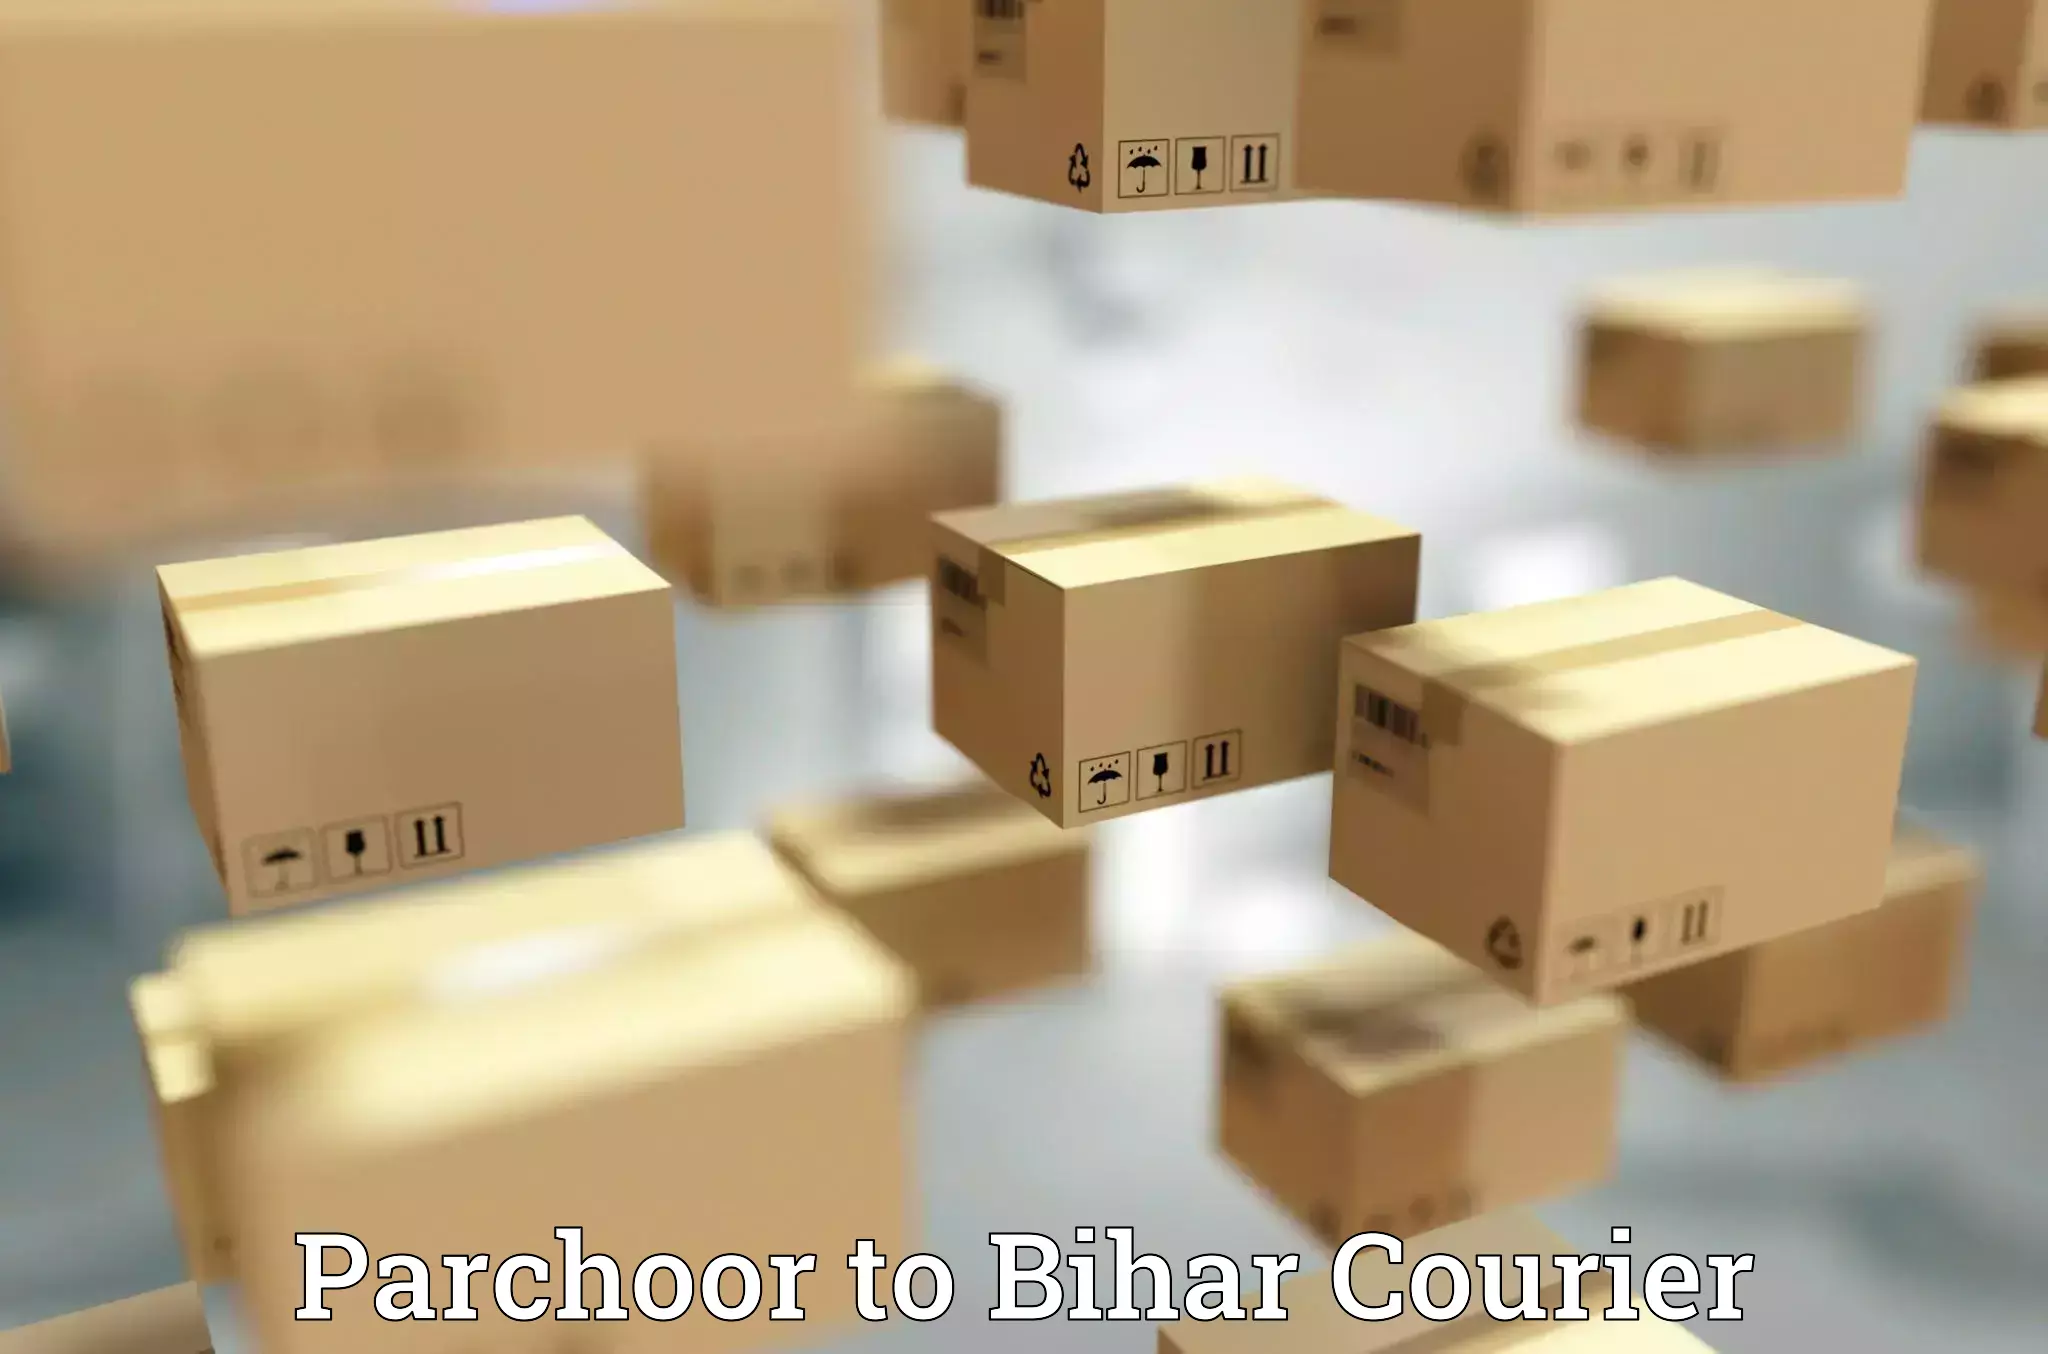 Delivery service partnership Parchoor to Bikramganj